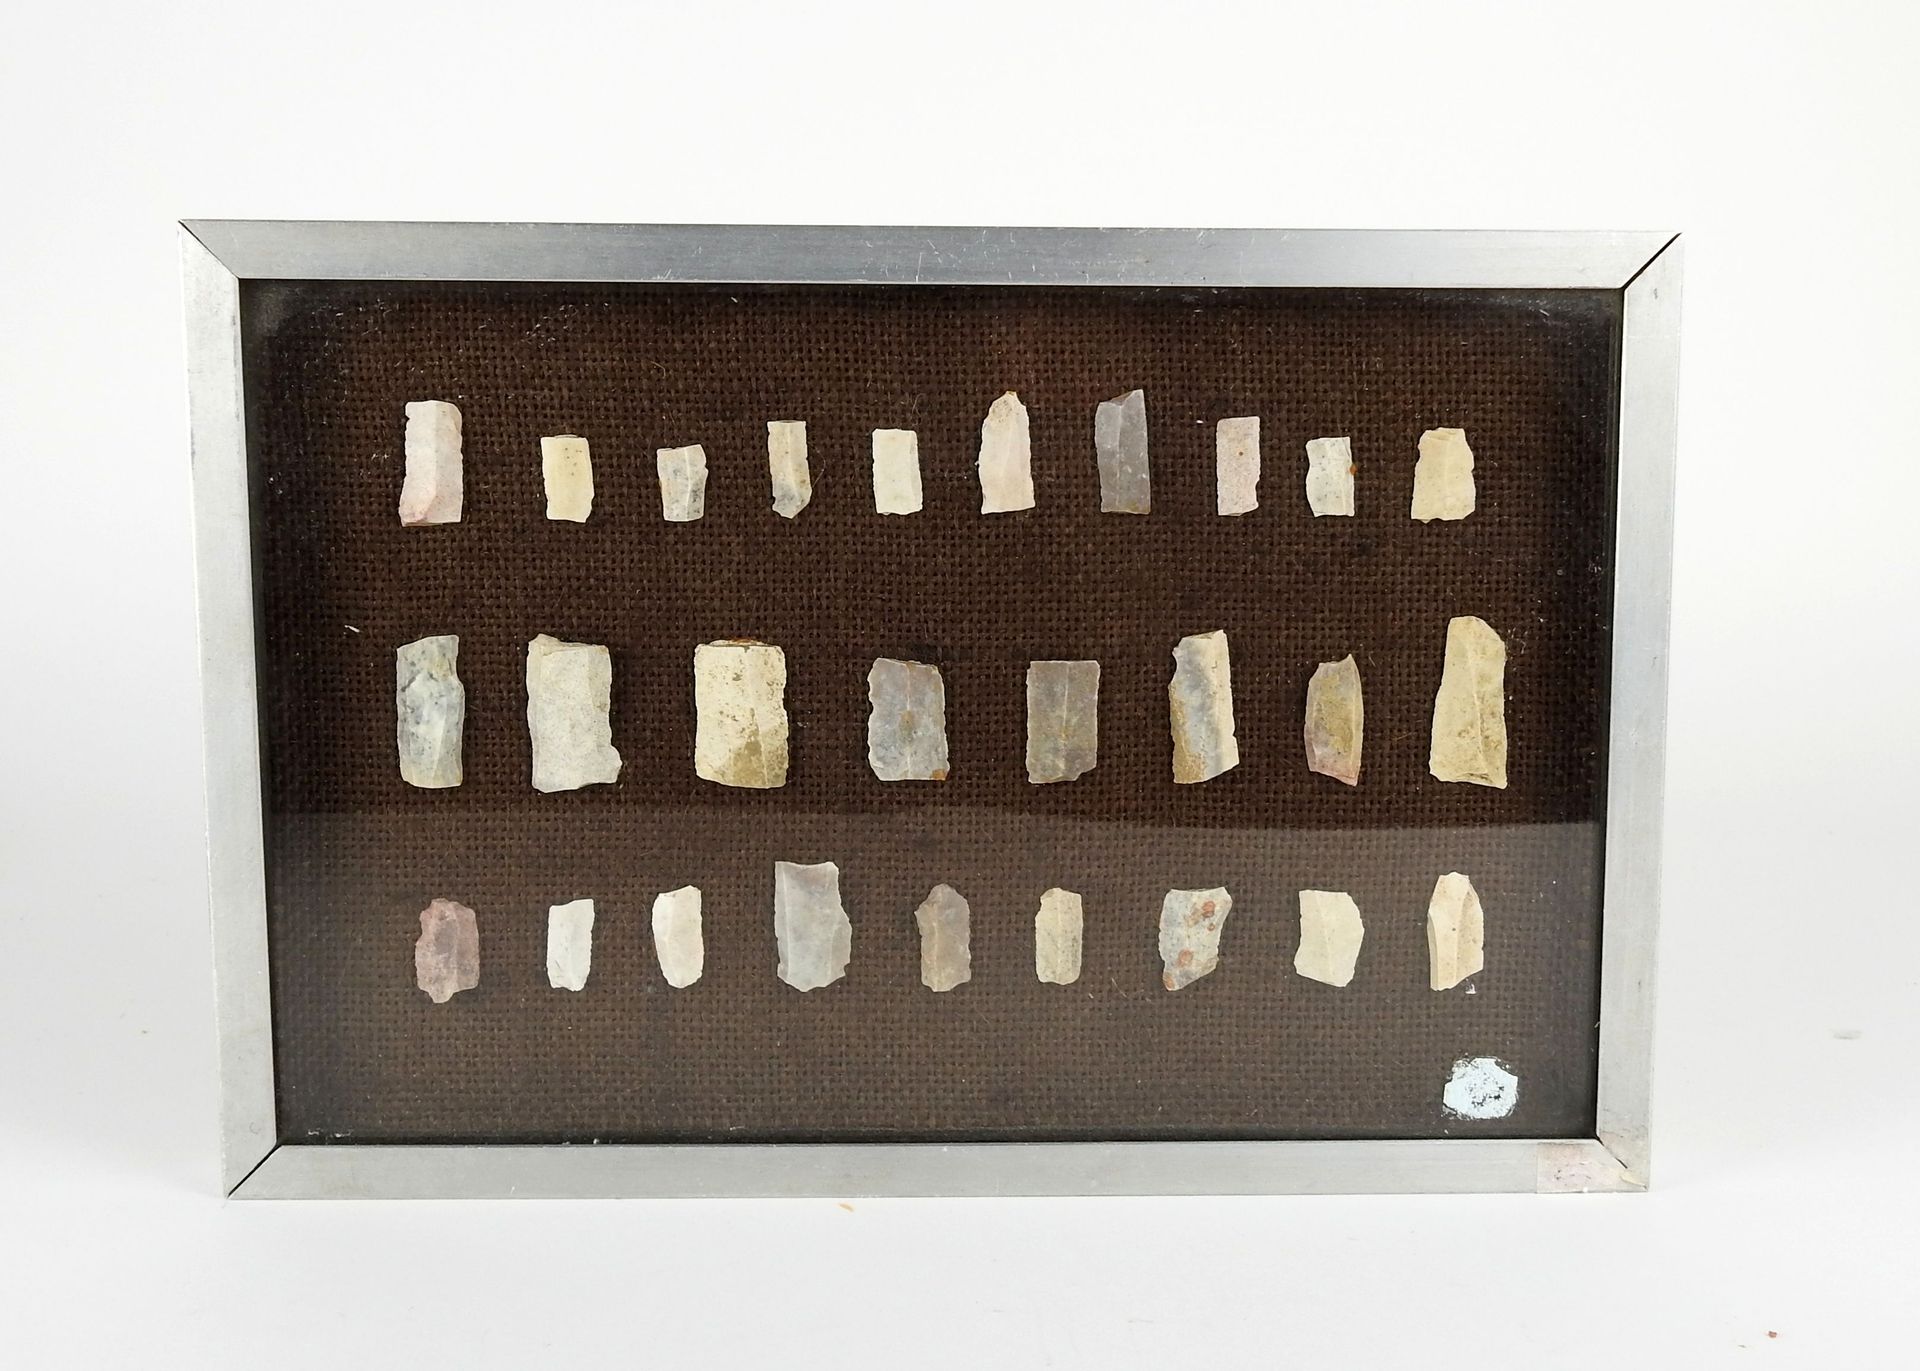 Null 博物馆展板上的幻灯片和微石块

燧石17 x 26厘米

法国史前史